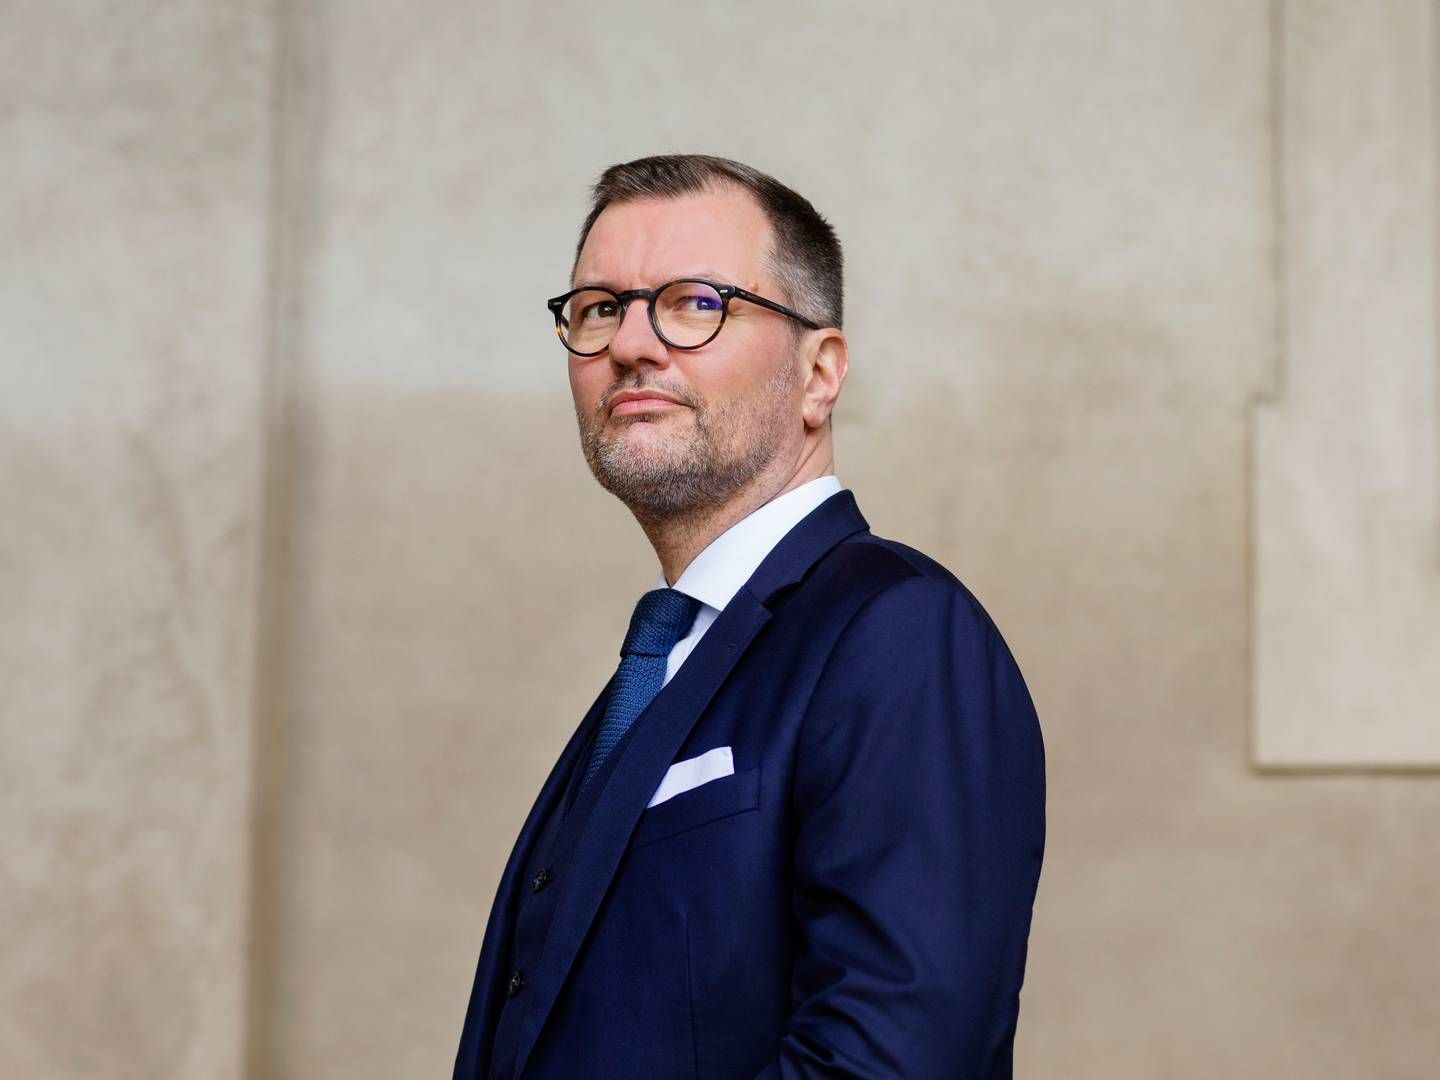 ”Det er langt størstedelen af vores salærer, som i så fald ikke kan vurderes af landsretterne," siger Kåre Pihlmann, formand for Landsforeningen af Forsvarsadvokater. | Foto: Sif Meincke